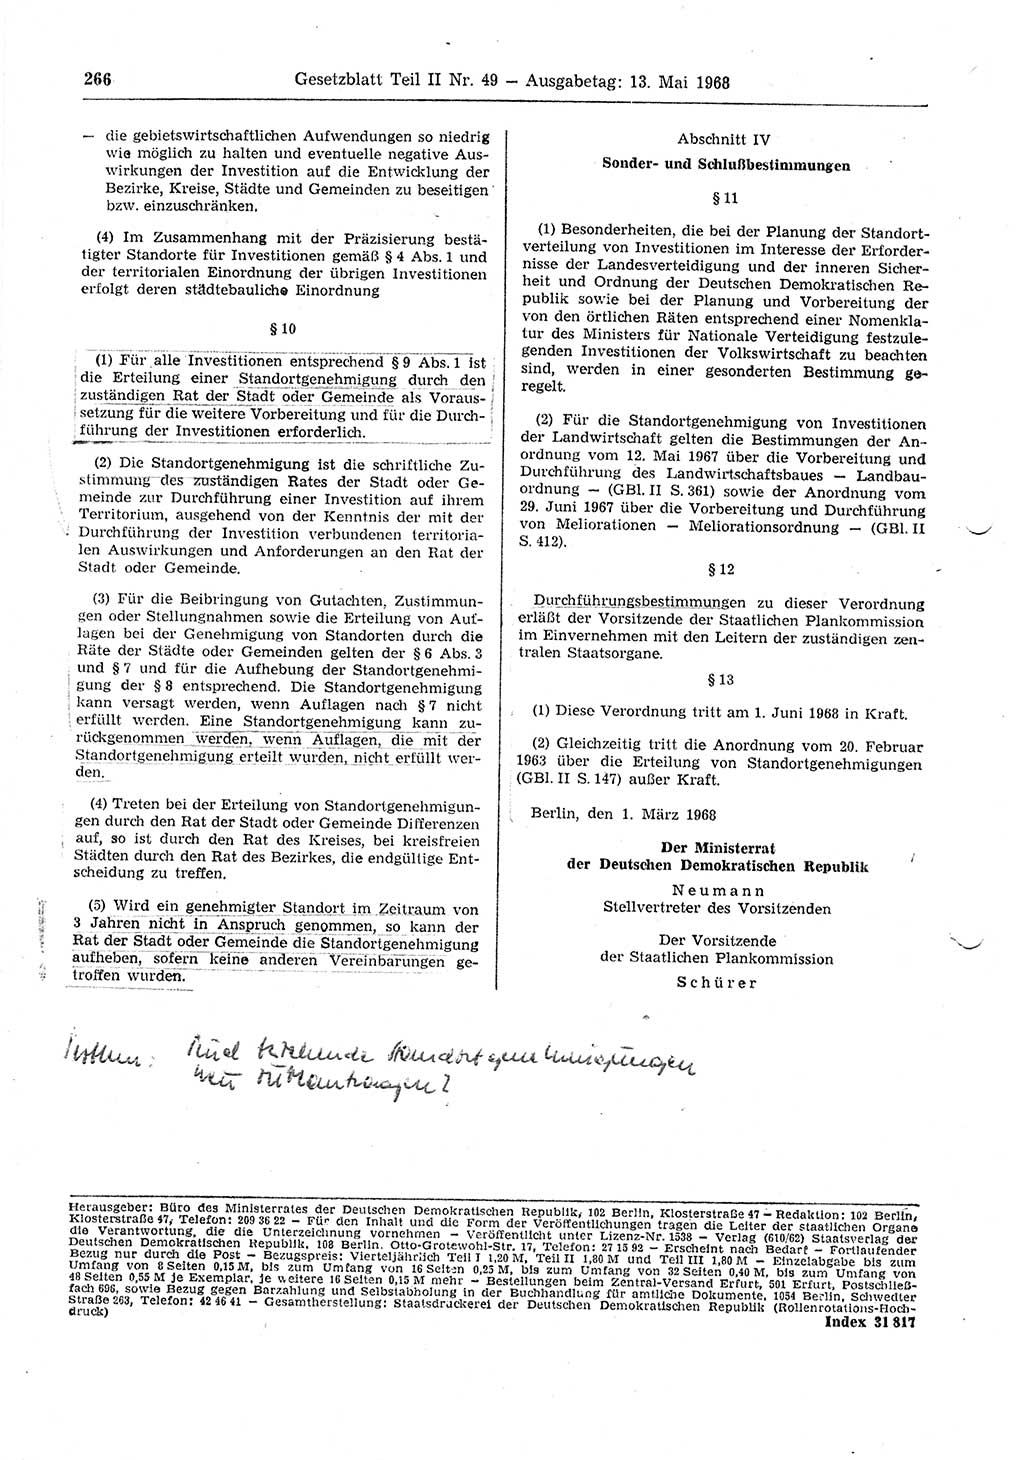 Gesetzblatt (GBl.) der Deutschen Demokratischen Republik (DDR) Teil ⅠⅠ 1968, Seite 266 (GBl. DDR ⅠⅠ 1968, S. 266)